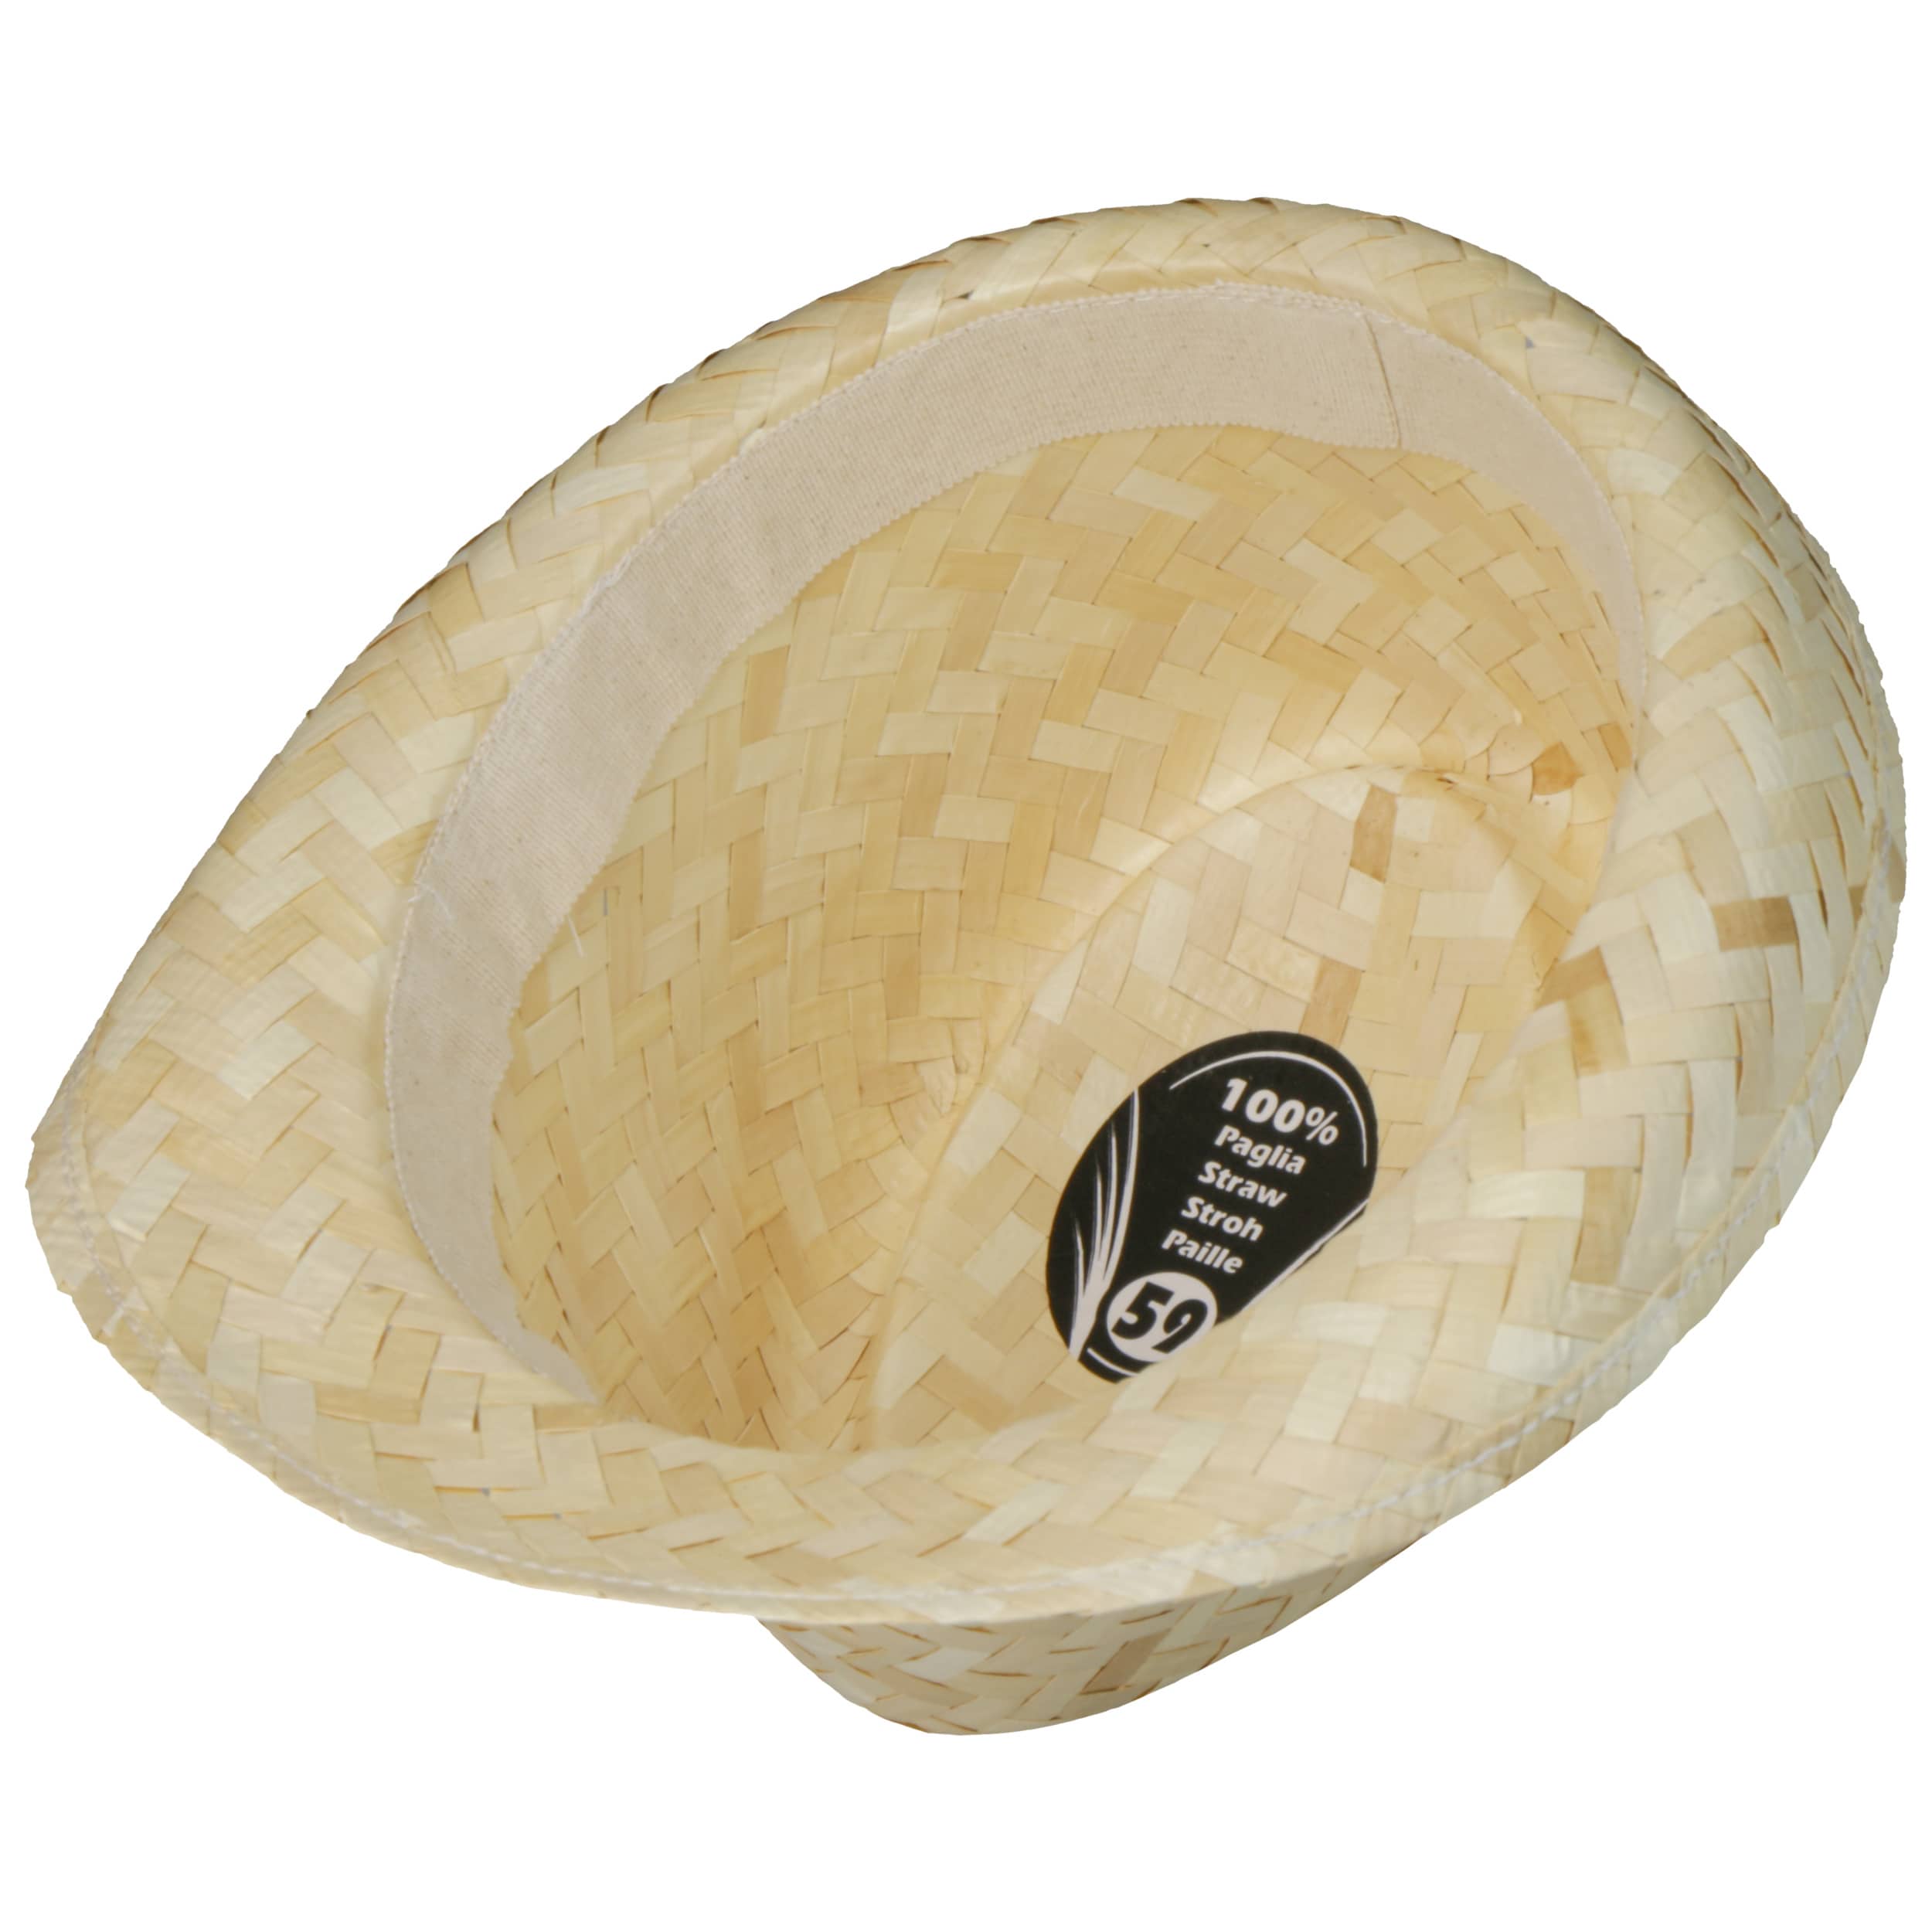 Sombrero de Paja Valencia Trilby sombreros de pajasombreros de verano 